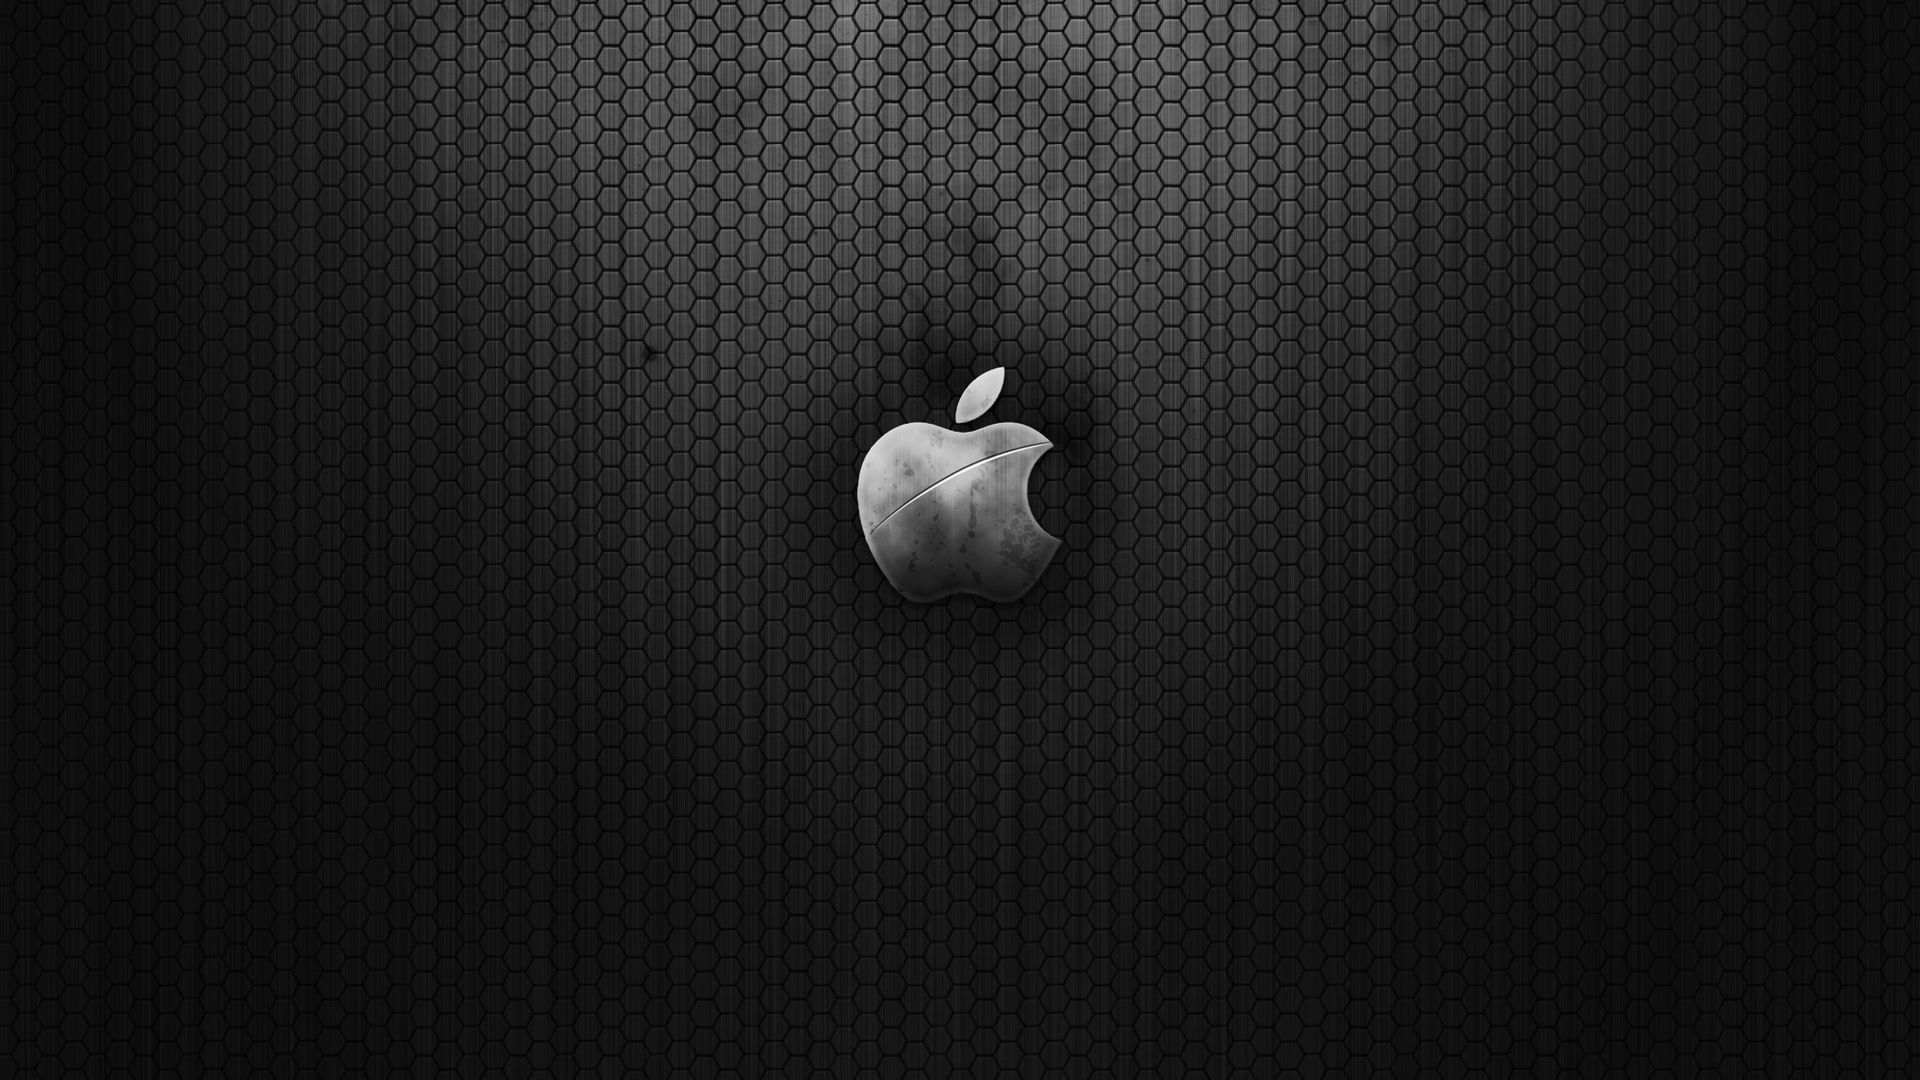 Apple hd wallpapers Cool Wallpaper HDwallpaperfun.com